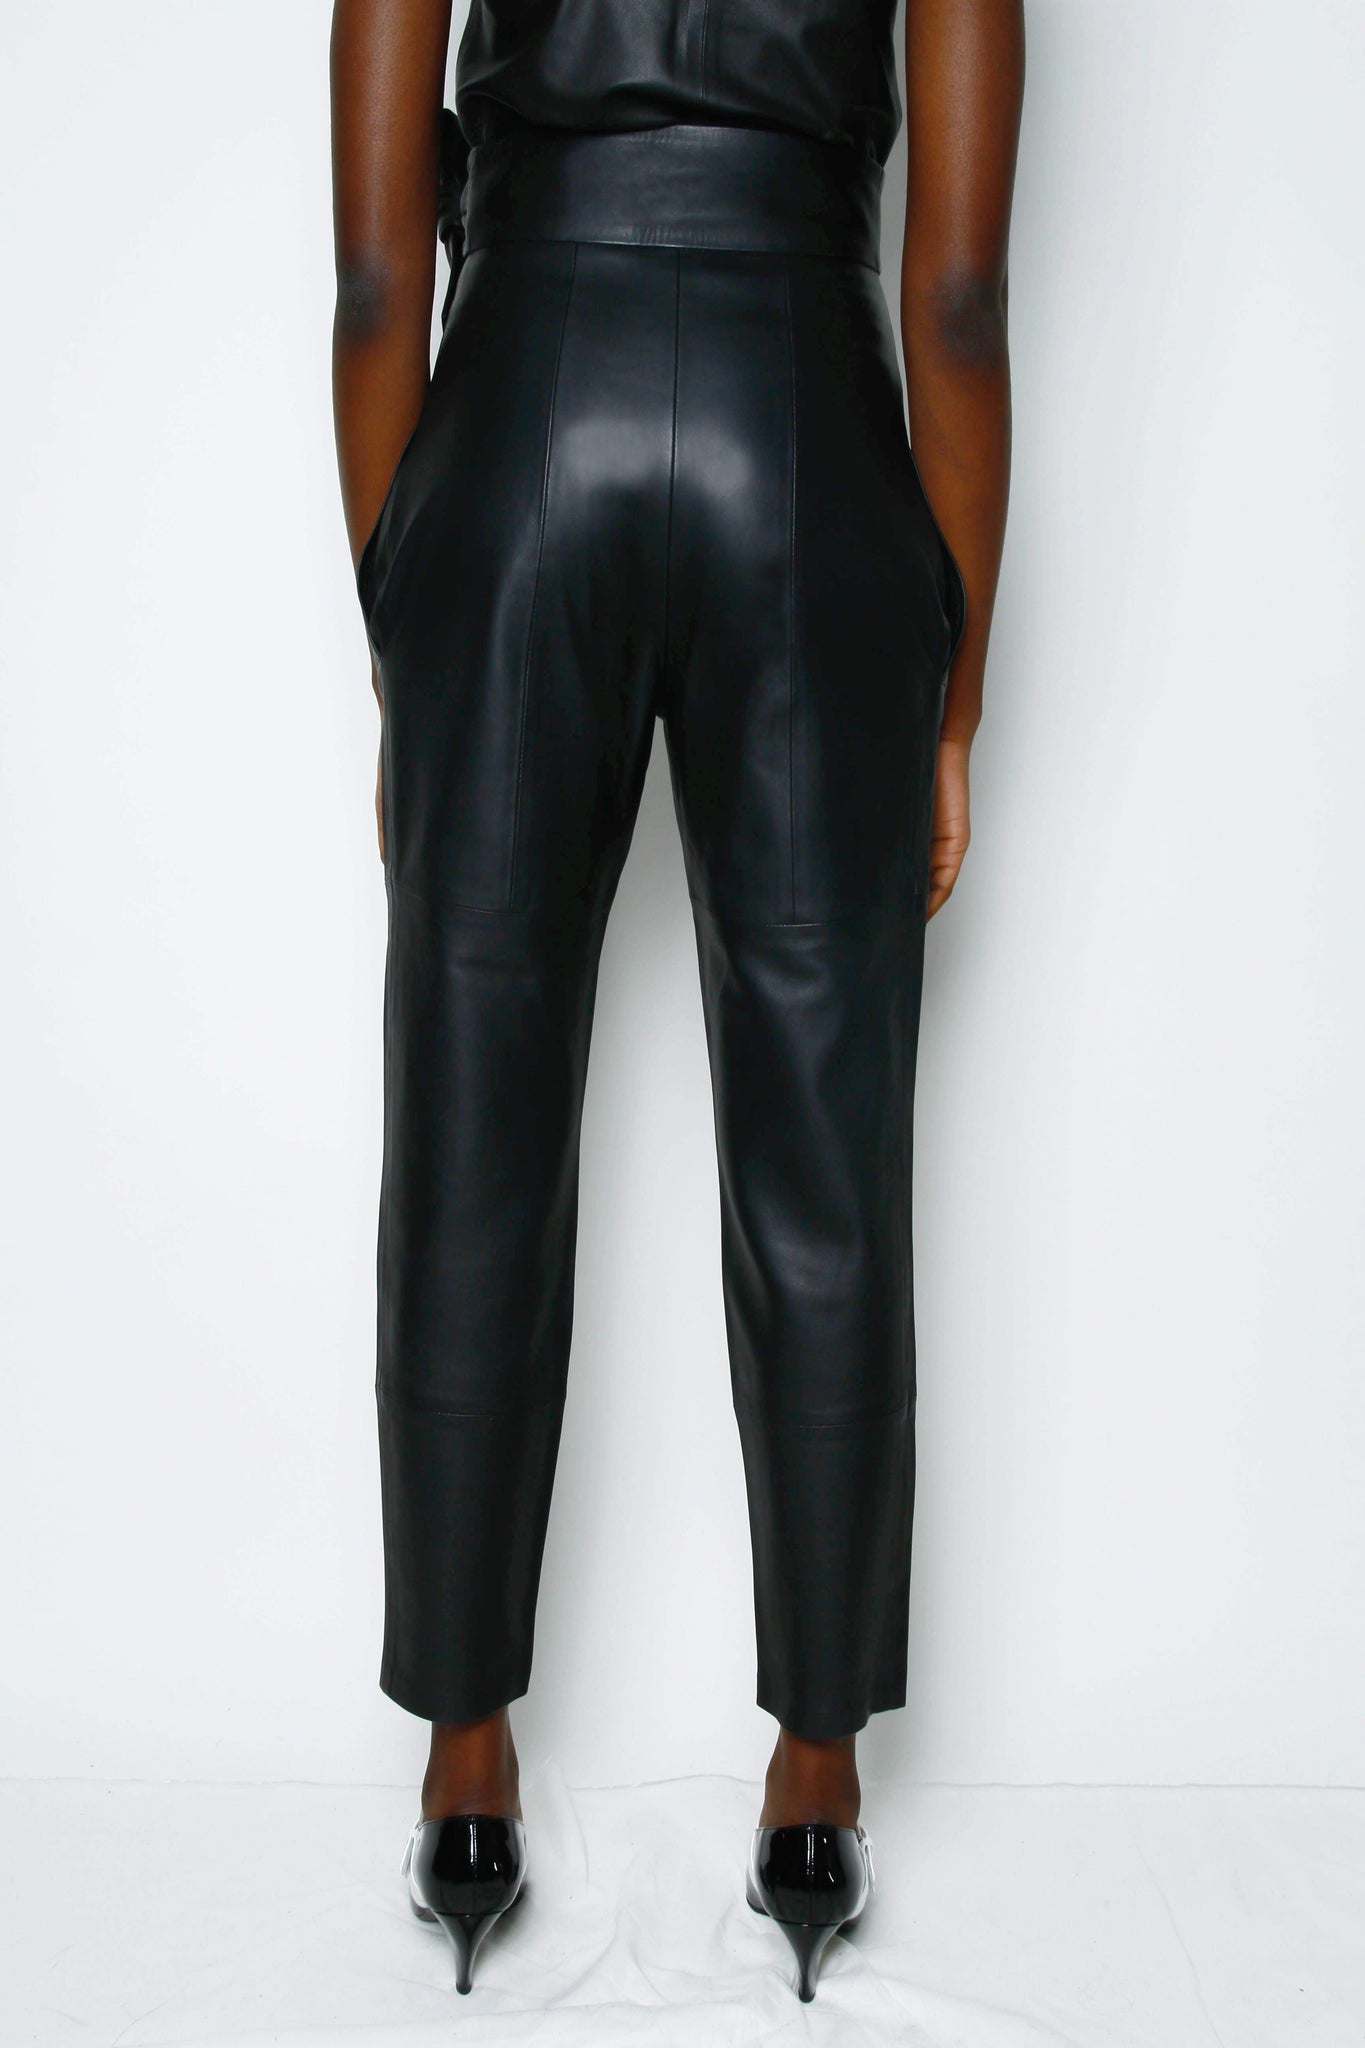 Sylis Lace-Up Faux Leather Pants - Black - $44